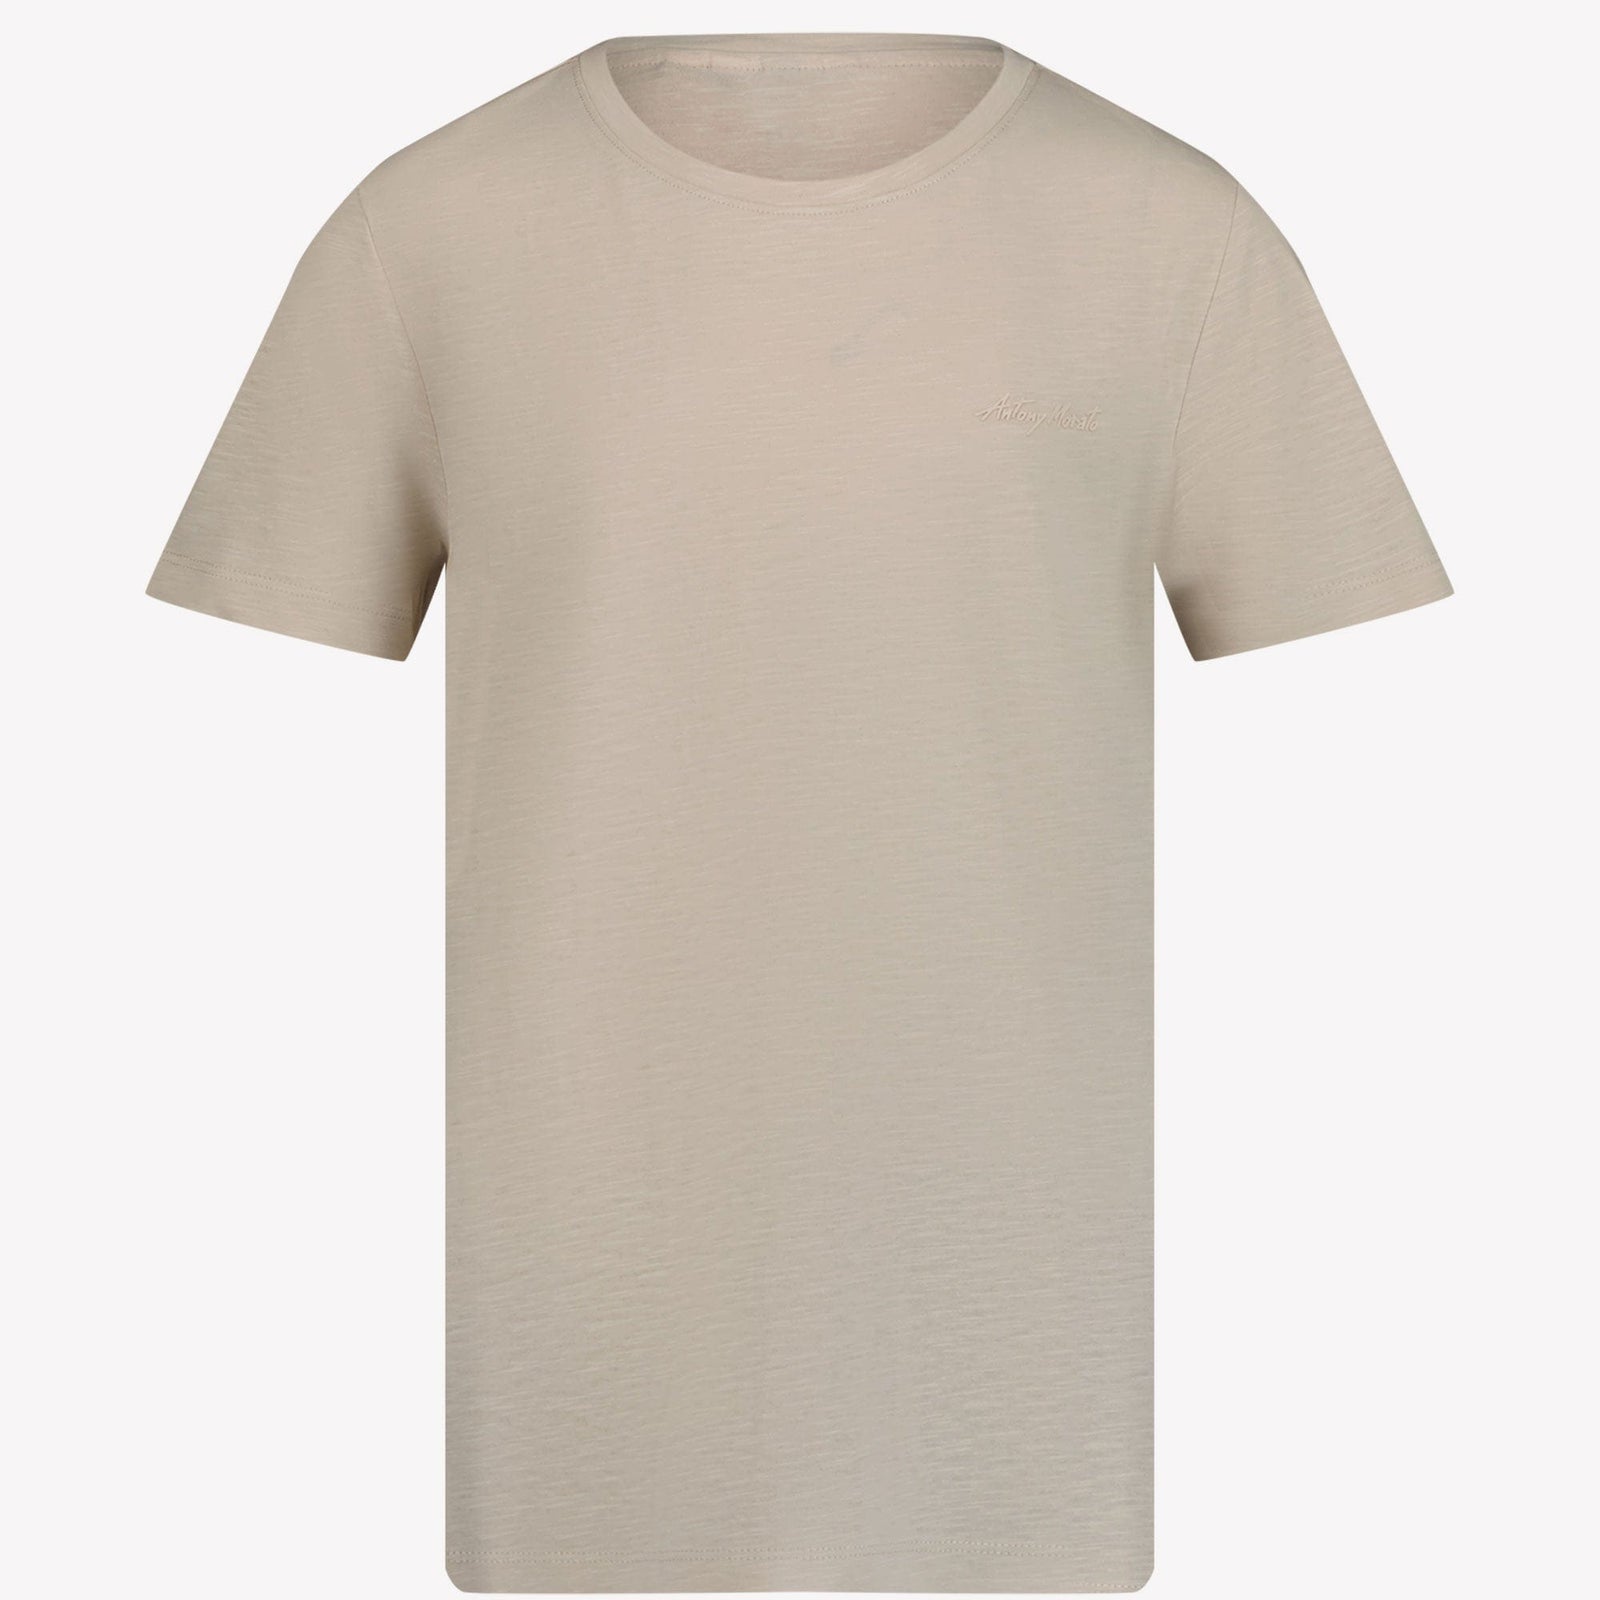 Antony Morato Kinder Jongens T-shirt Zand 4Y